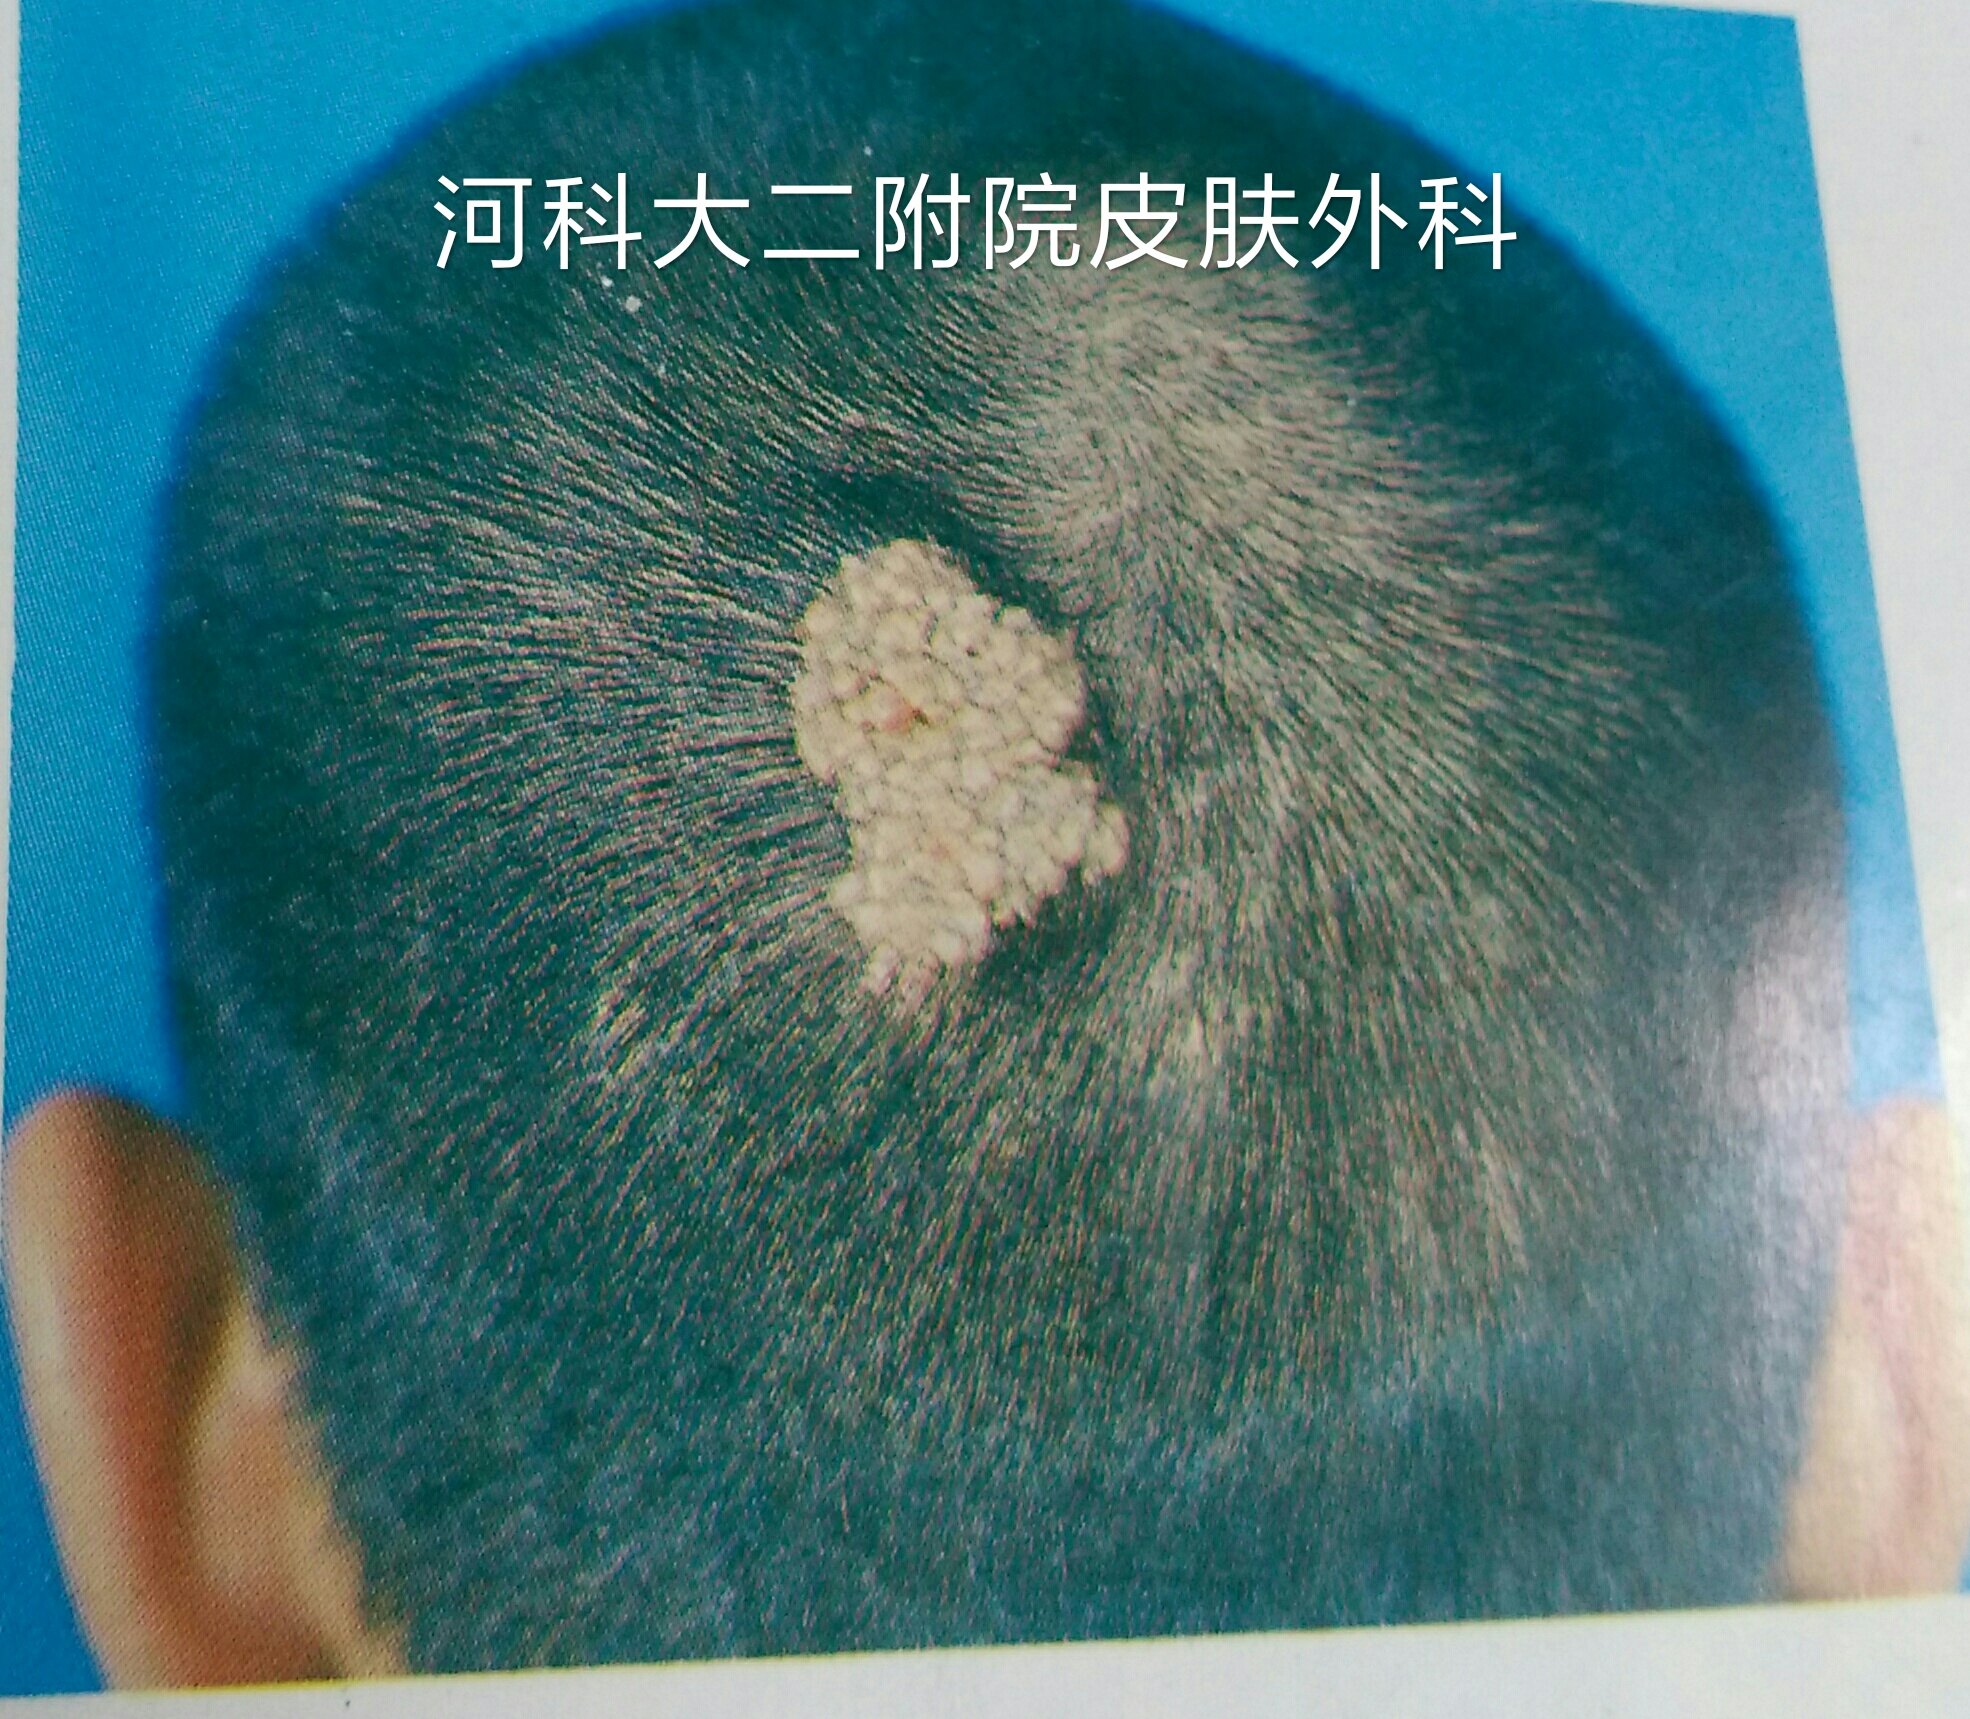 发生于头皮时,皮脂腺痣表面无毛发生长.